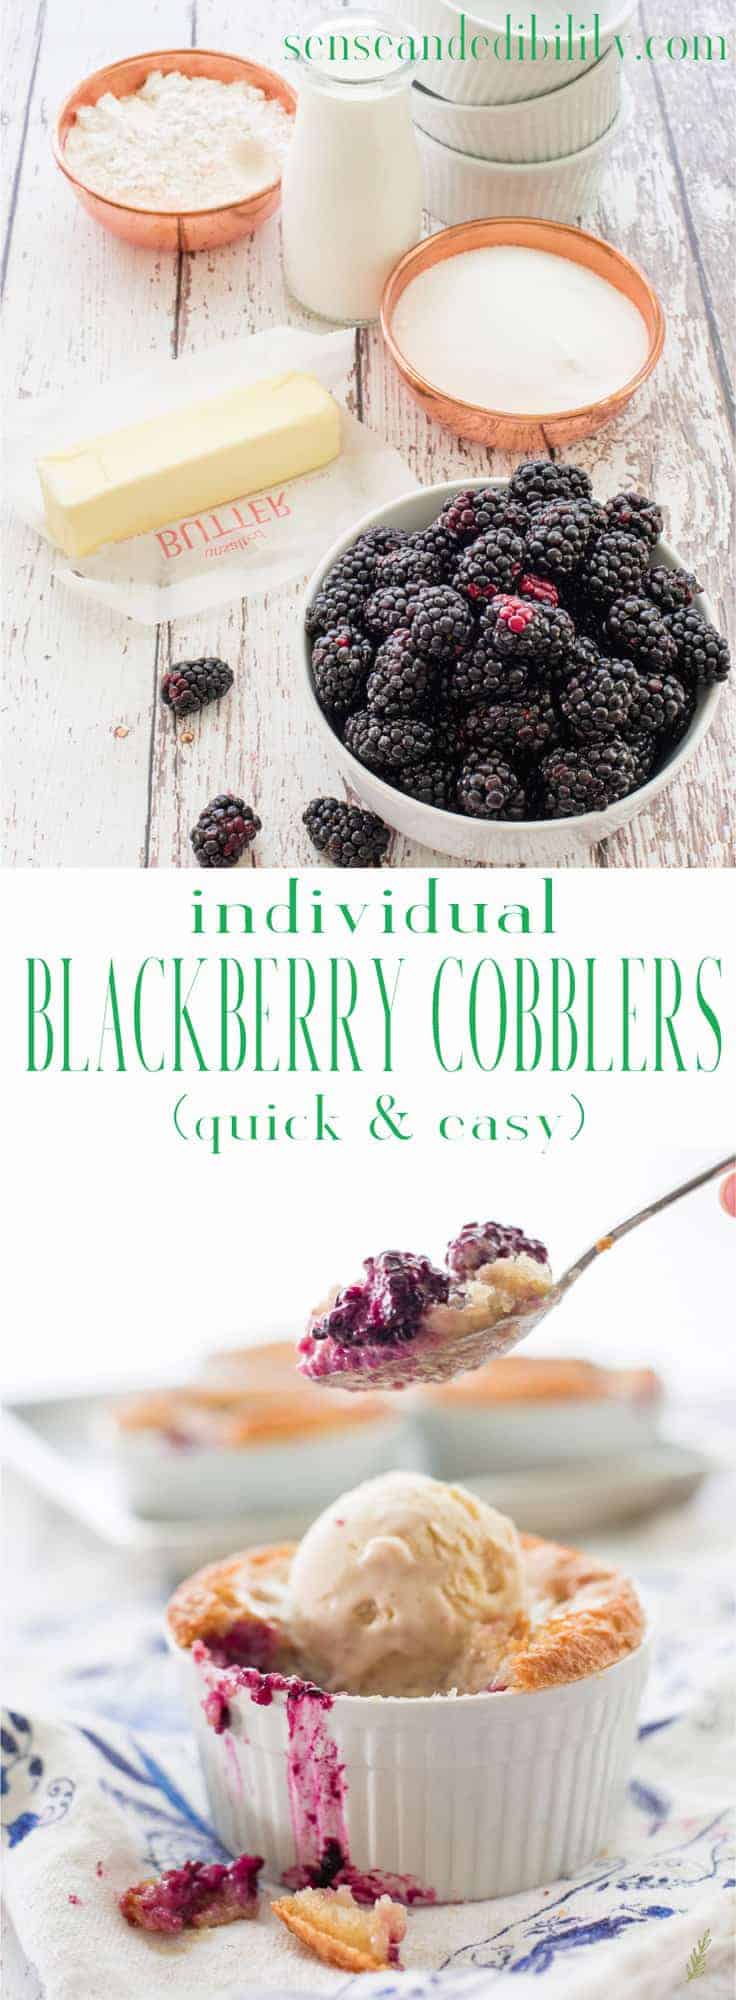 Blackberry Cobblers tarjoilee kesän hedelmiä mitä herkullisimmalla tavalla. Päällä taikina kuori, tämä jälkiruoka on täydellinen makea loppu kesäisin aterioita. Älä unohda runsasta kauhallista pakastekiisseliä sen kanssa tarjoiltavaksi! #blackberrycobbler #cobbler #berrycobbler #dessert #alamode via @ediblesense